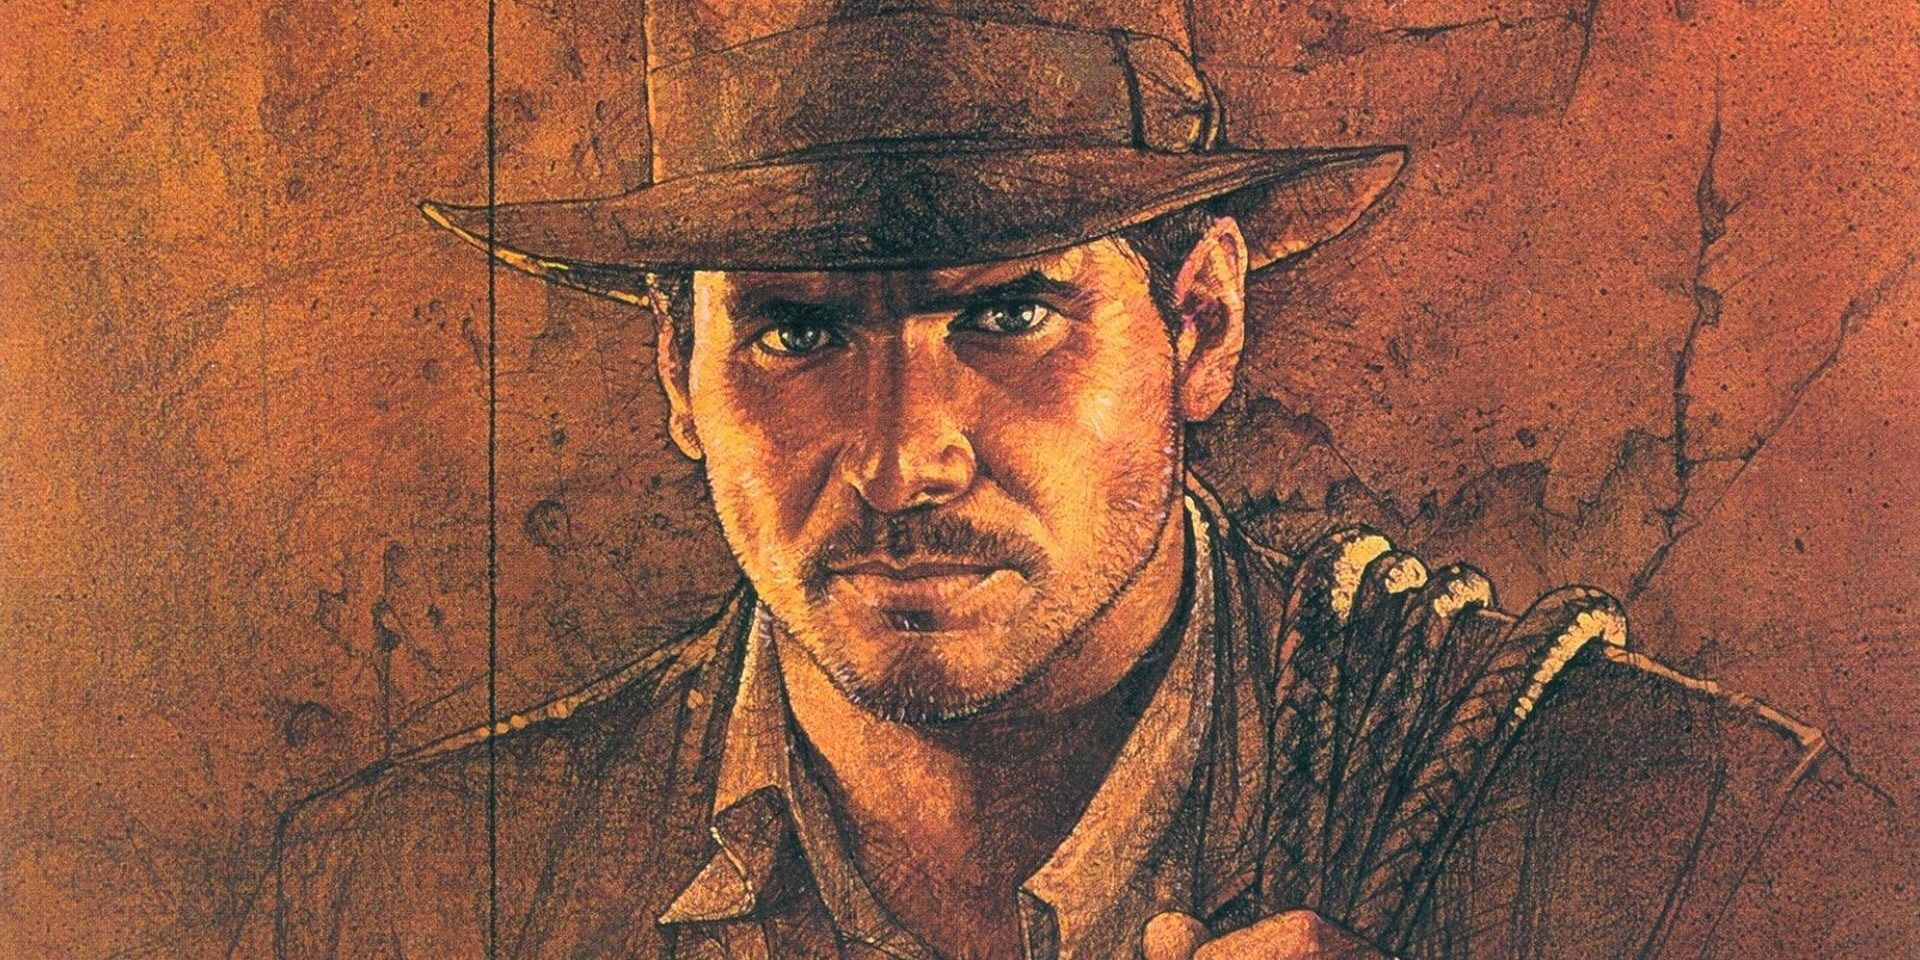 Toda la franquicia de Indiana Jones (incluido el programa de televisión) obtiene una nueva transmisión en casa antes de Dial Of Destiny